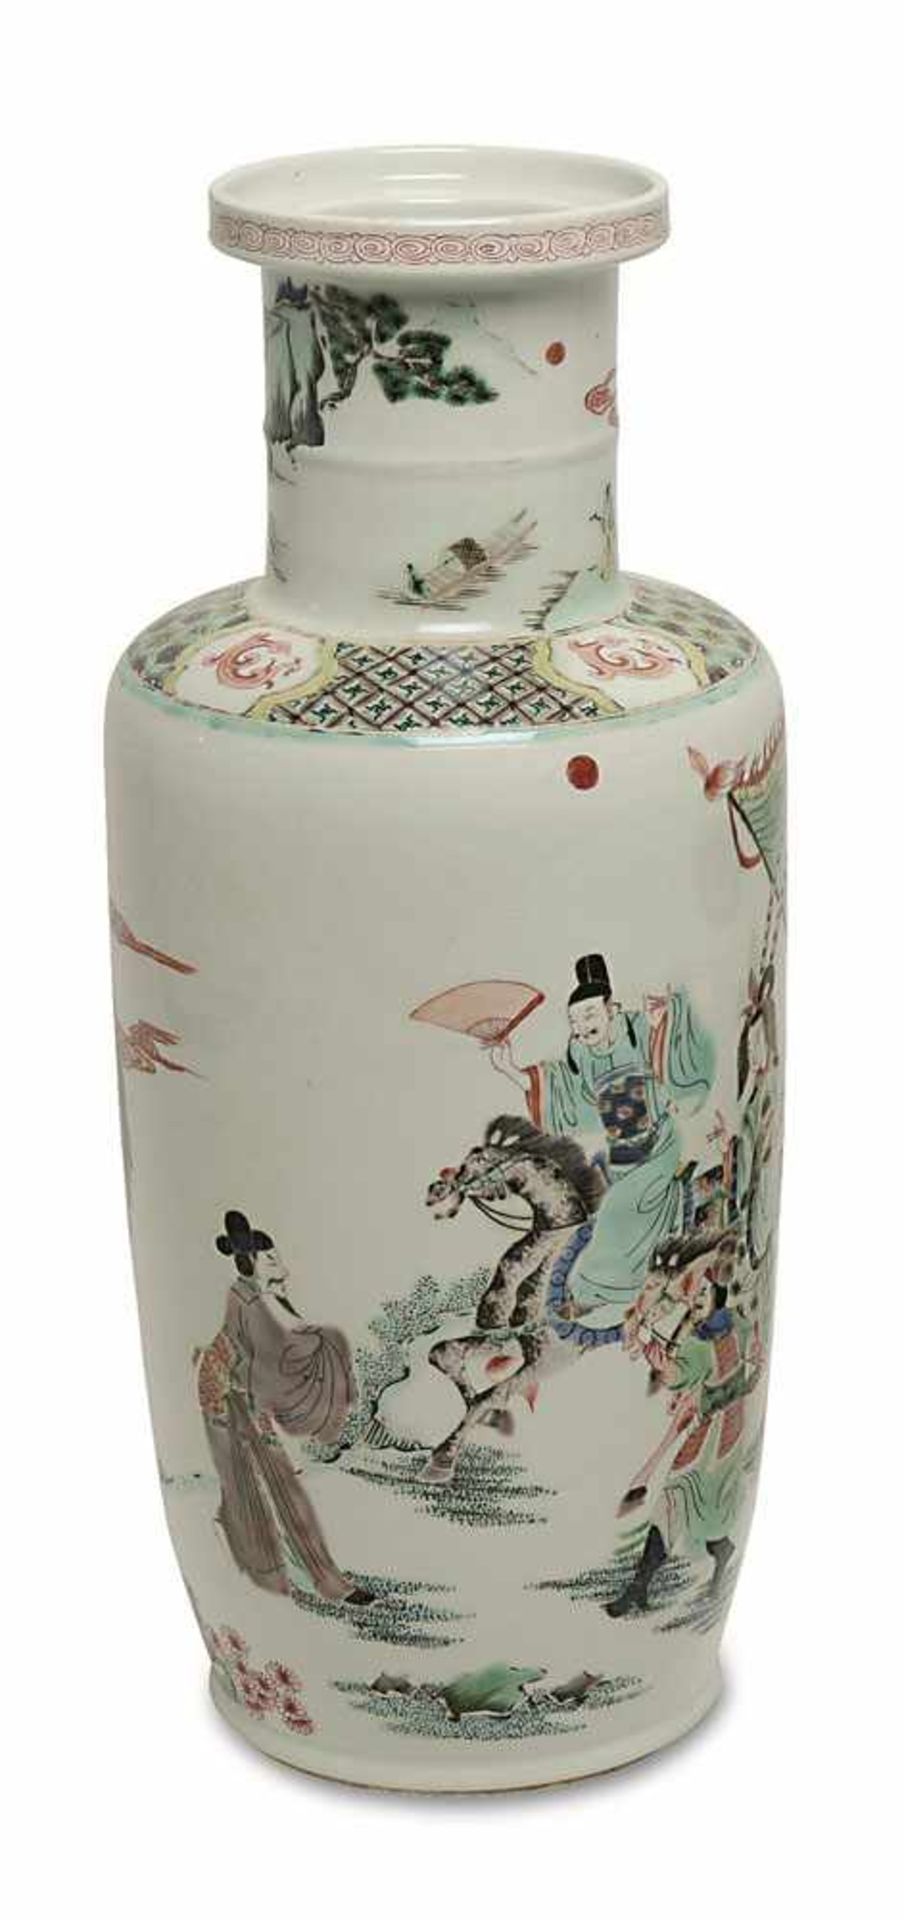 Rouleau-Vase China, 19./20. Jh. Porzellan. Bunter Dekor in den Farben der famille verte: Reiter in